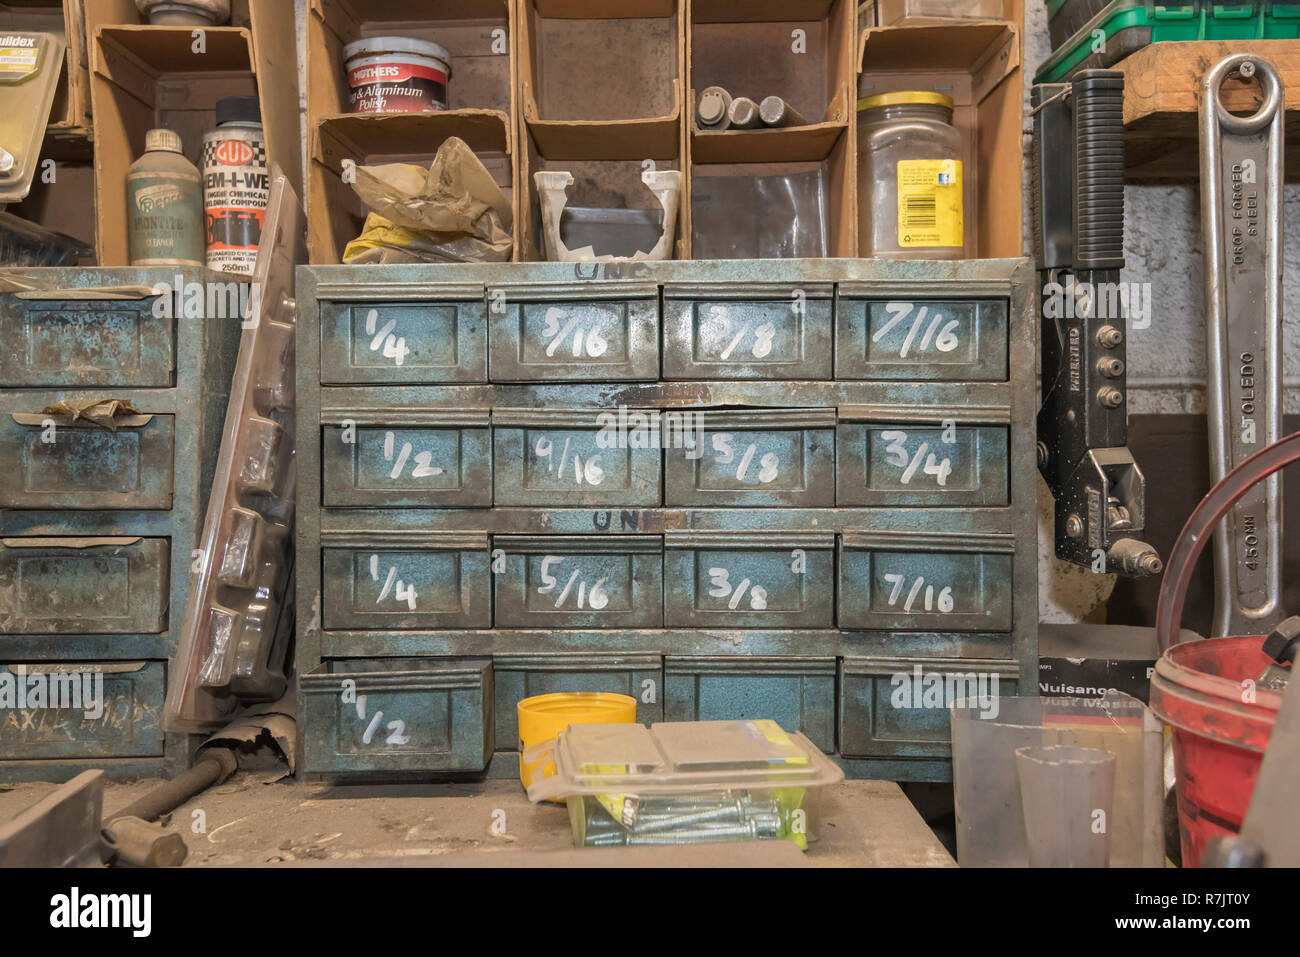 Ein alter Satz Teile Schubladen mit imperialen amerikanischen Messungen an jeder Schublade in einem Workshop gekennzeichnet Stockfoto